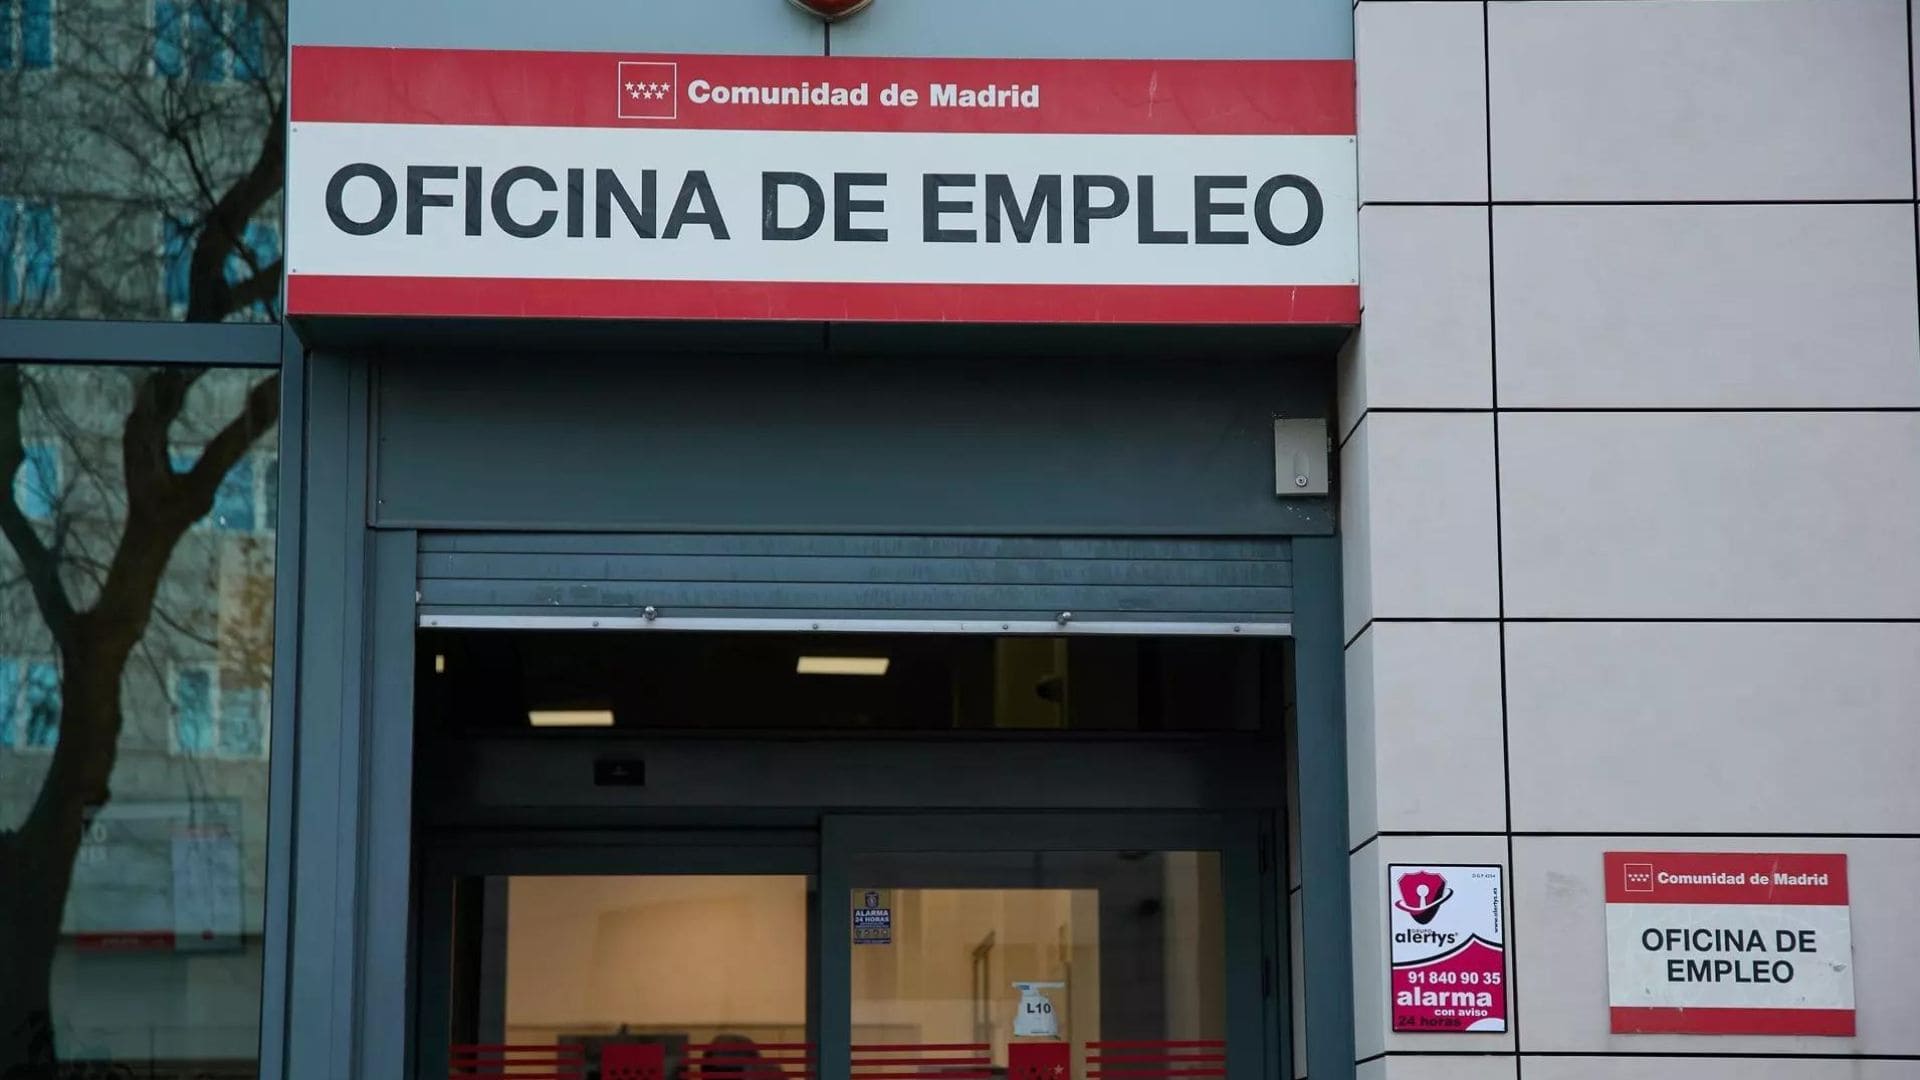 Ofertas de empleo del SEPE con sueldos de 30.000 euros